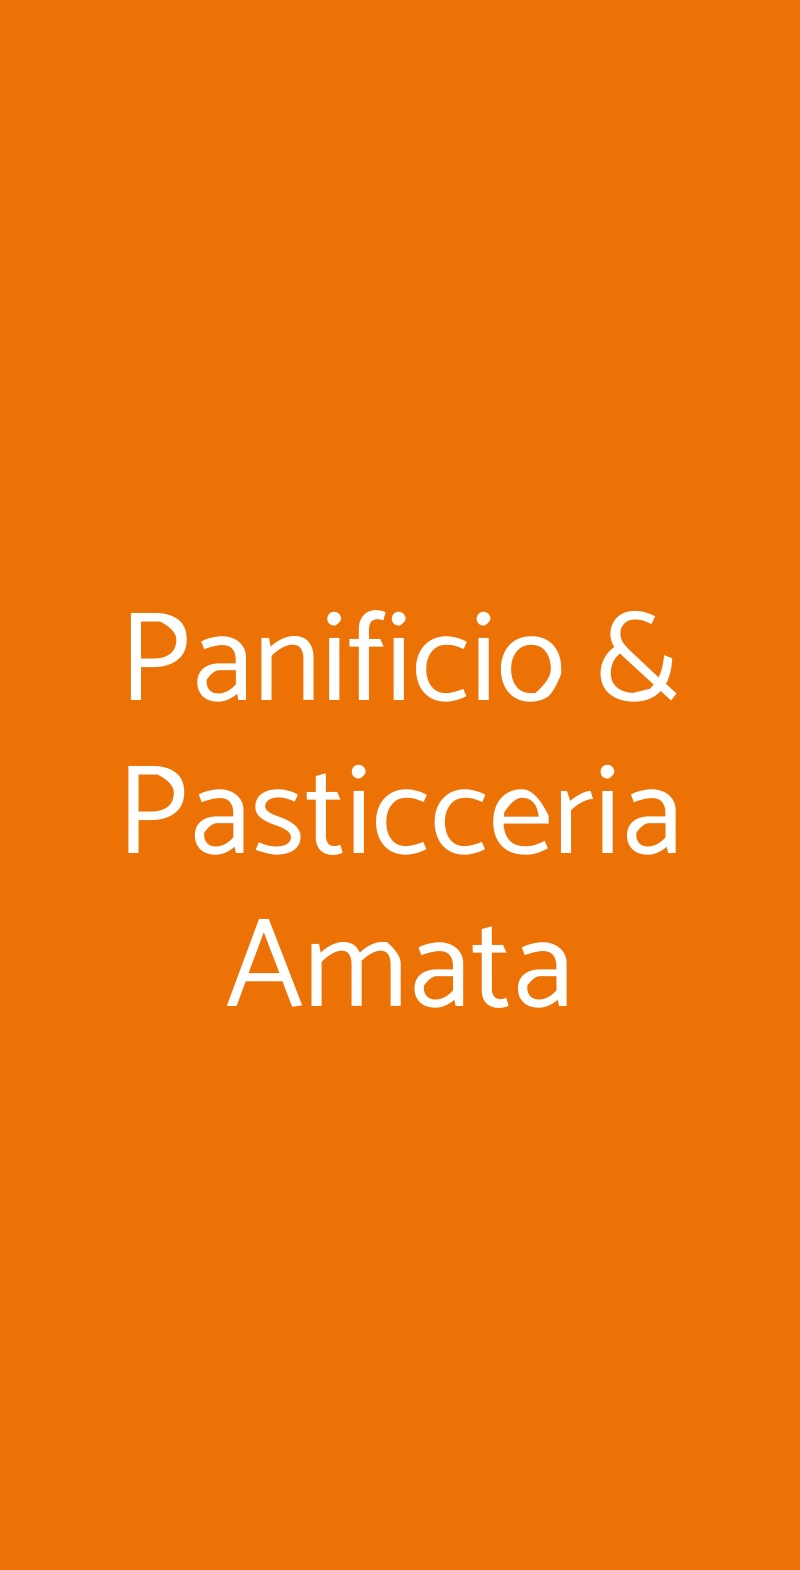 Panificio & Pasticceria Amata Milano menù 1 pagina